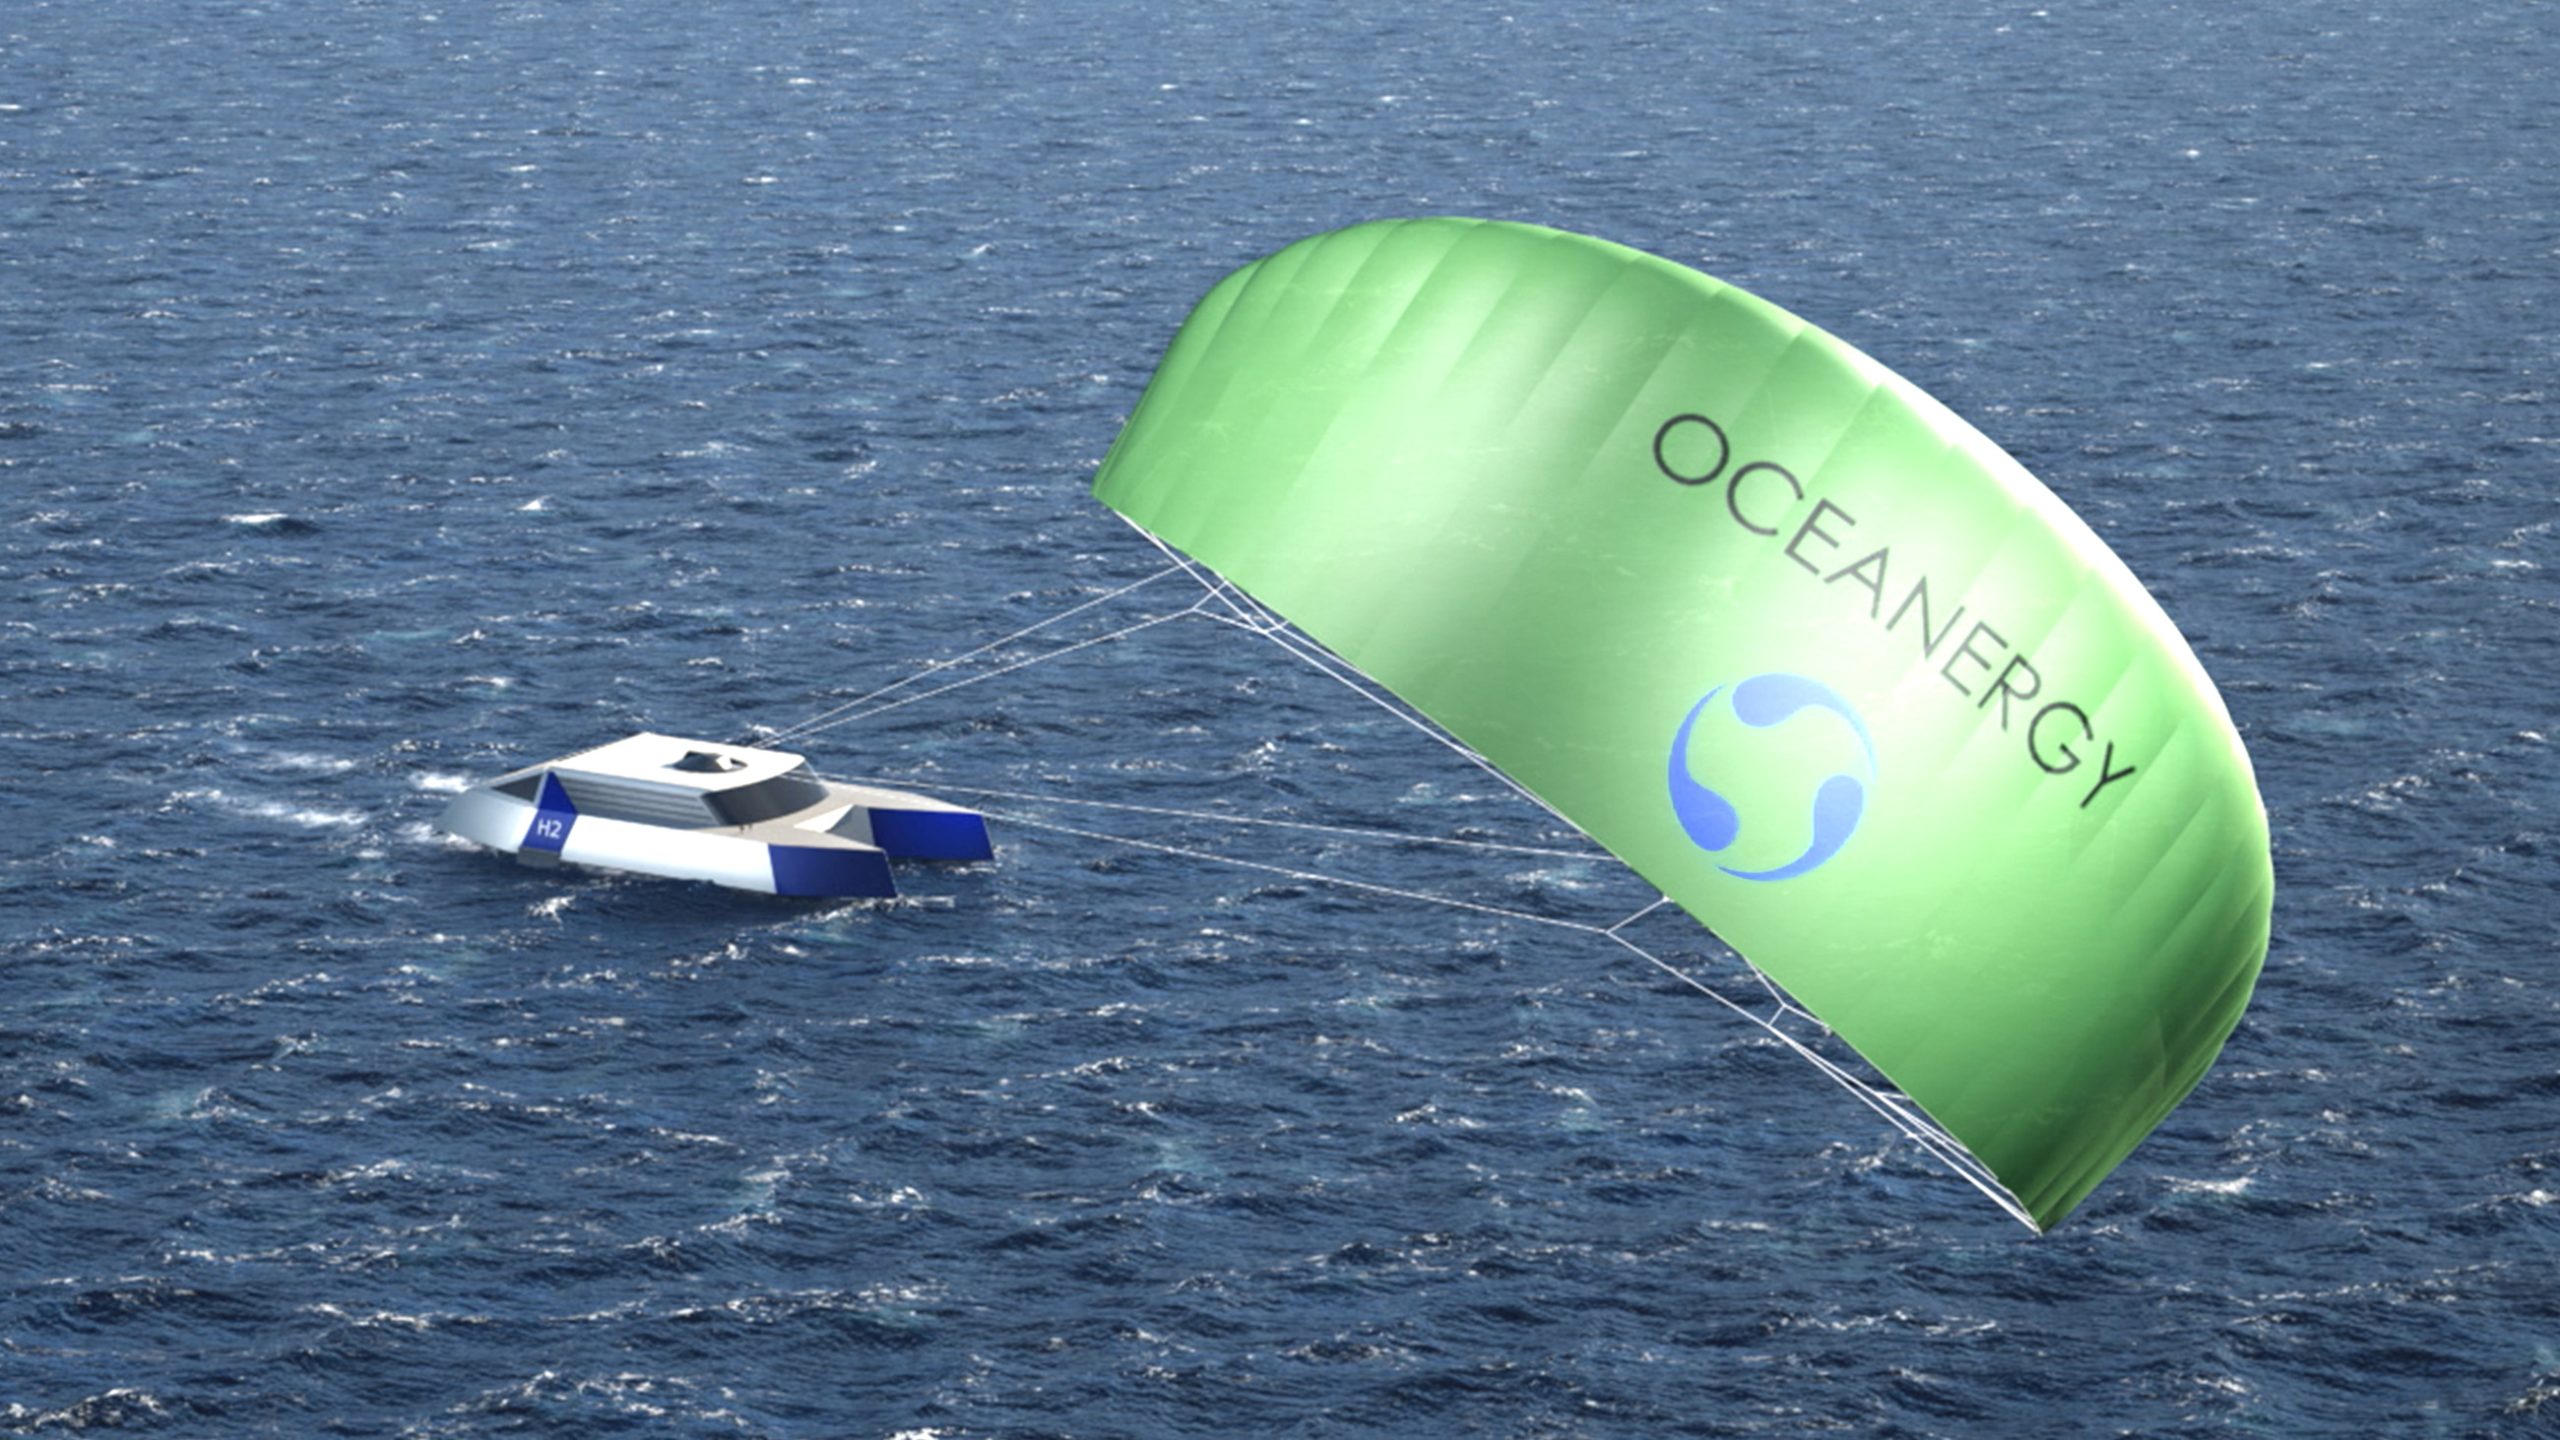 Cynapse-Getriebe unterstützen Gewinnung von grünem Wasserstoff auf Kite-Schiffen